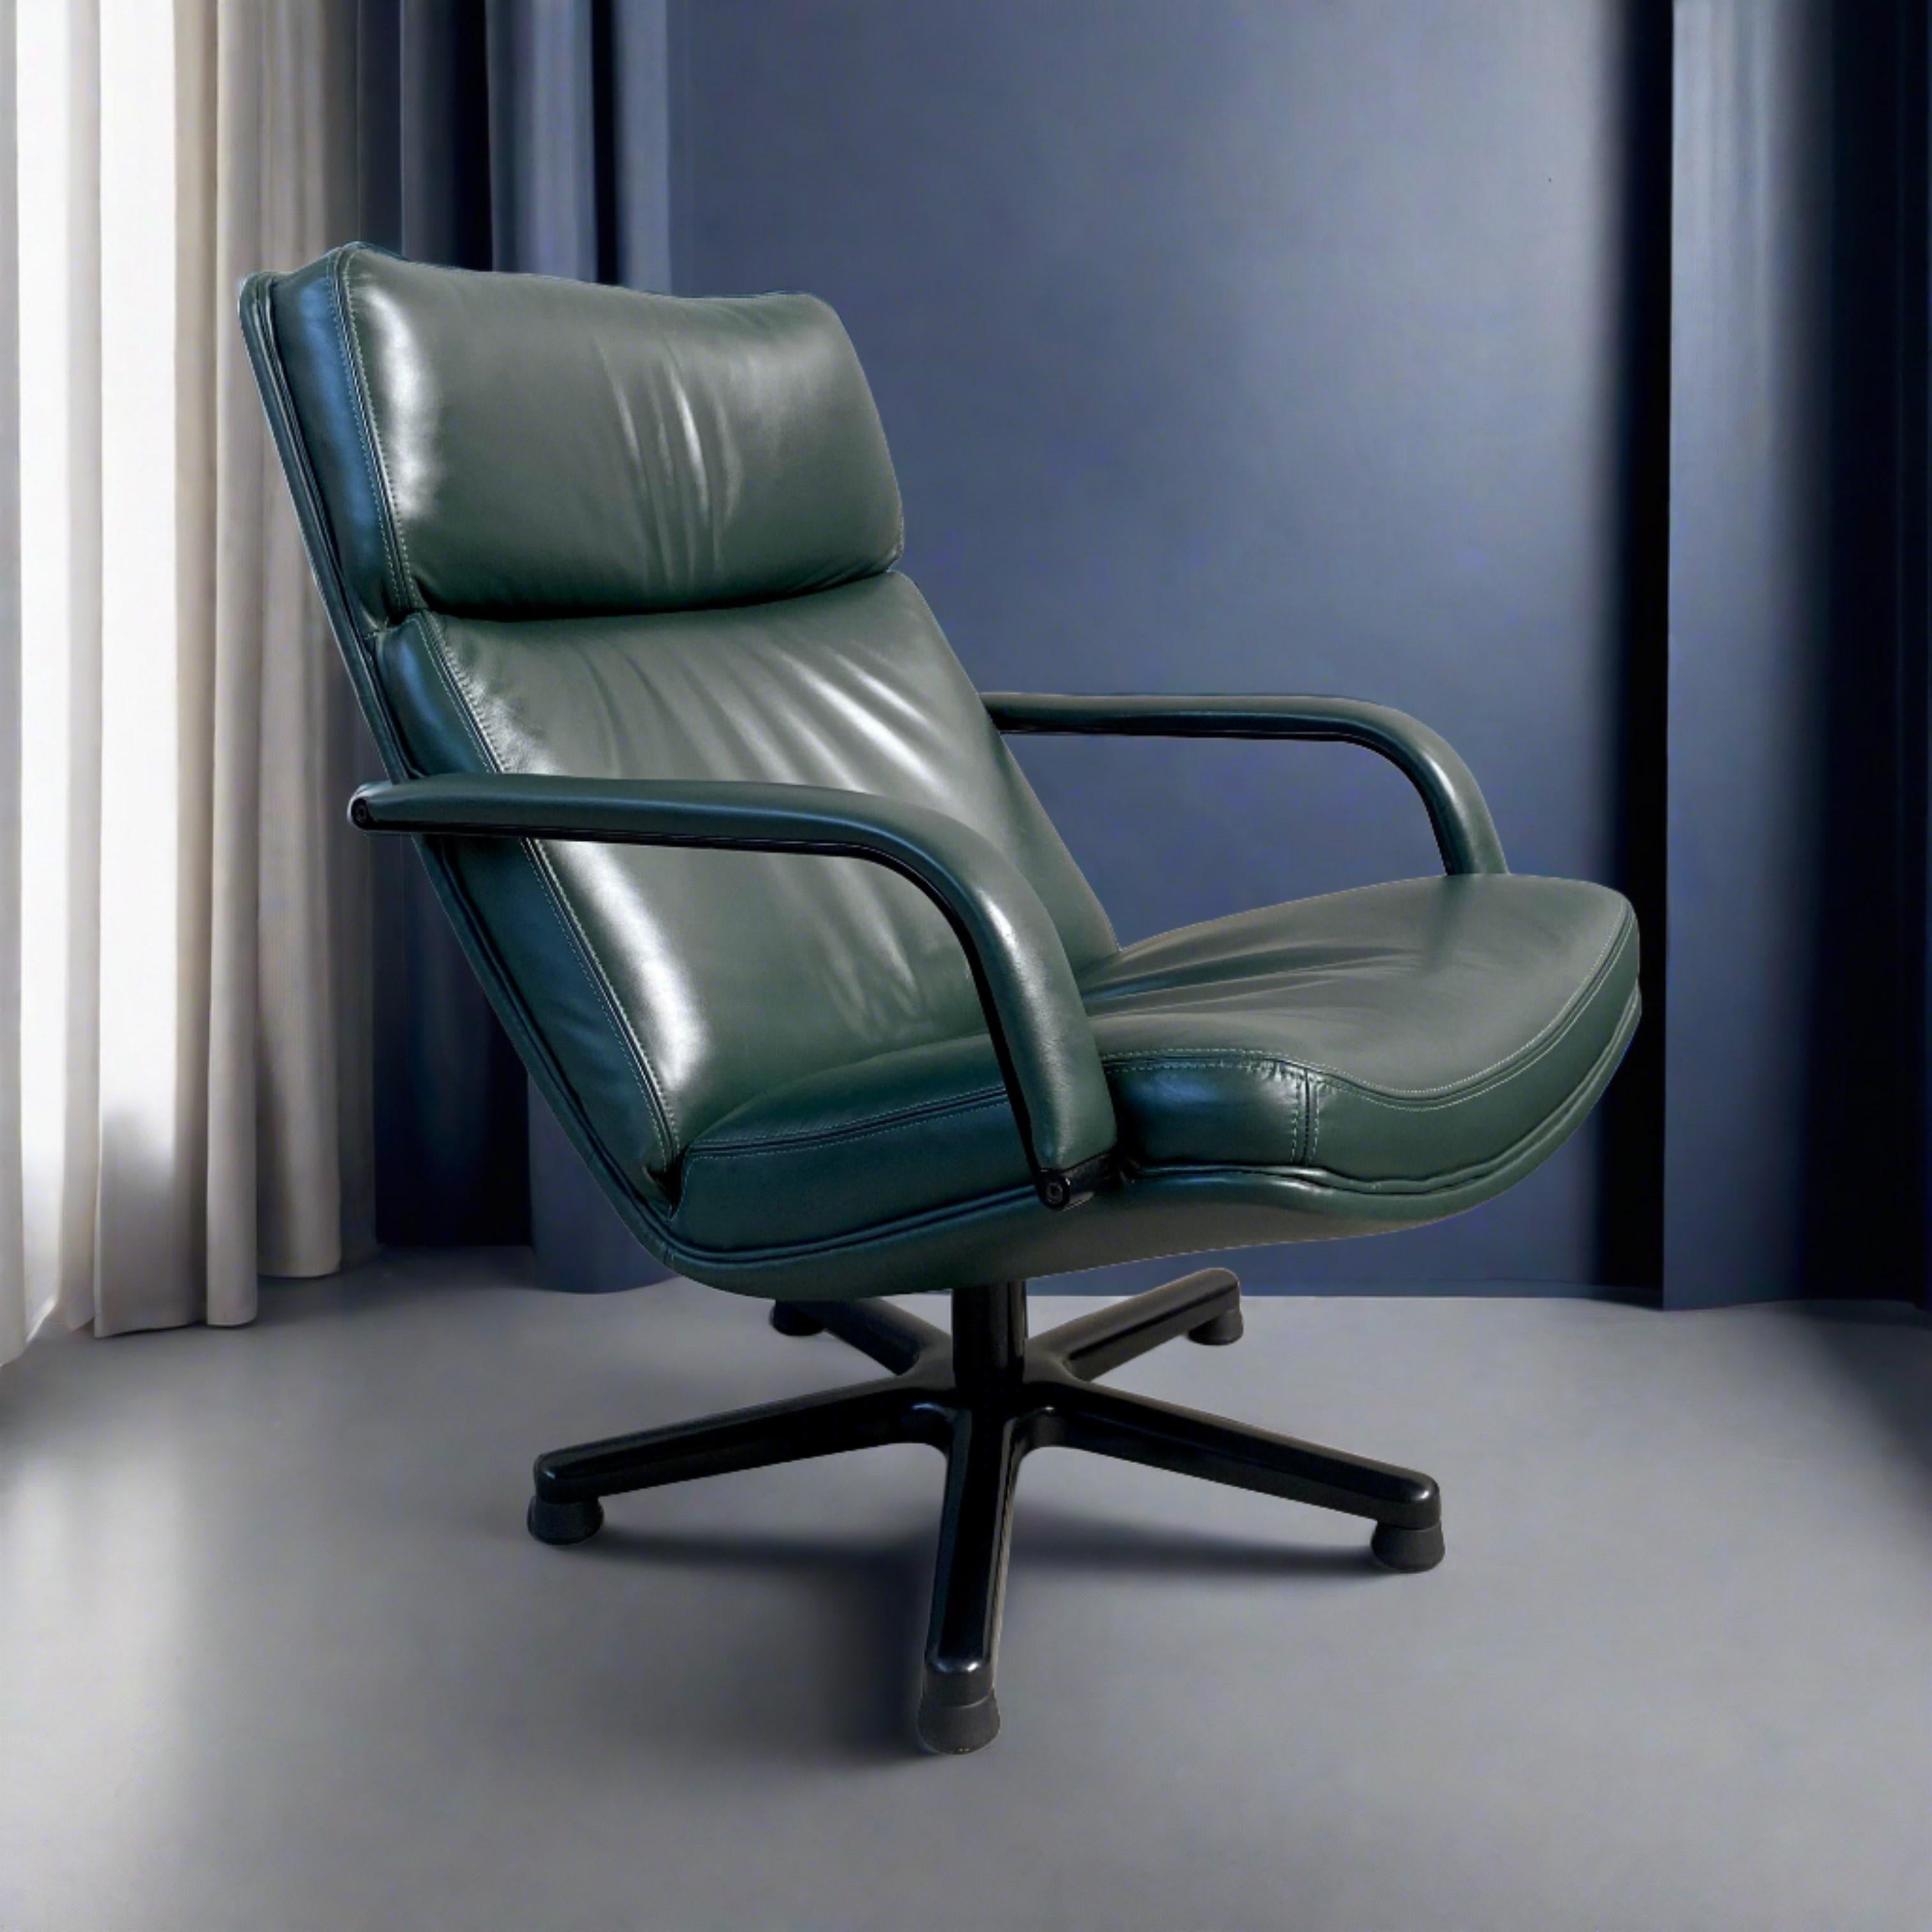 Die zeitlose Eleganz des Forrest Green Leather Swivel Lounge Chair Modell F141 von Geoffrey Harcourt für Artifort Netherlands 1978

Treten Sie ein in eine Welt der Raffinesse und des Komforts mit dem kultigen Forrest Green Leather Swivel Lounge